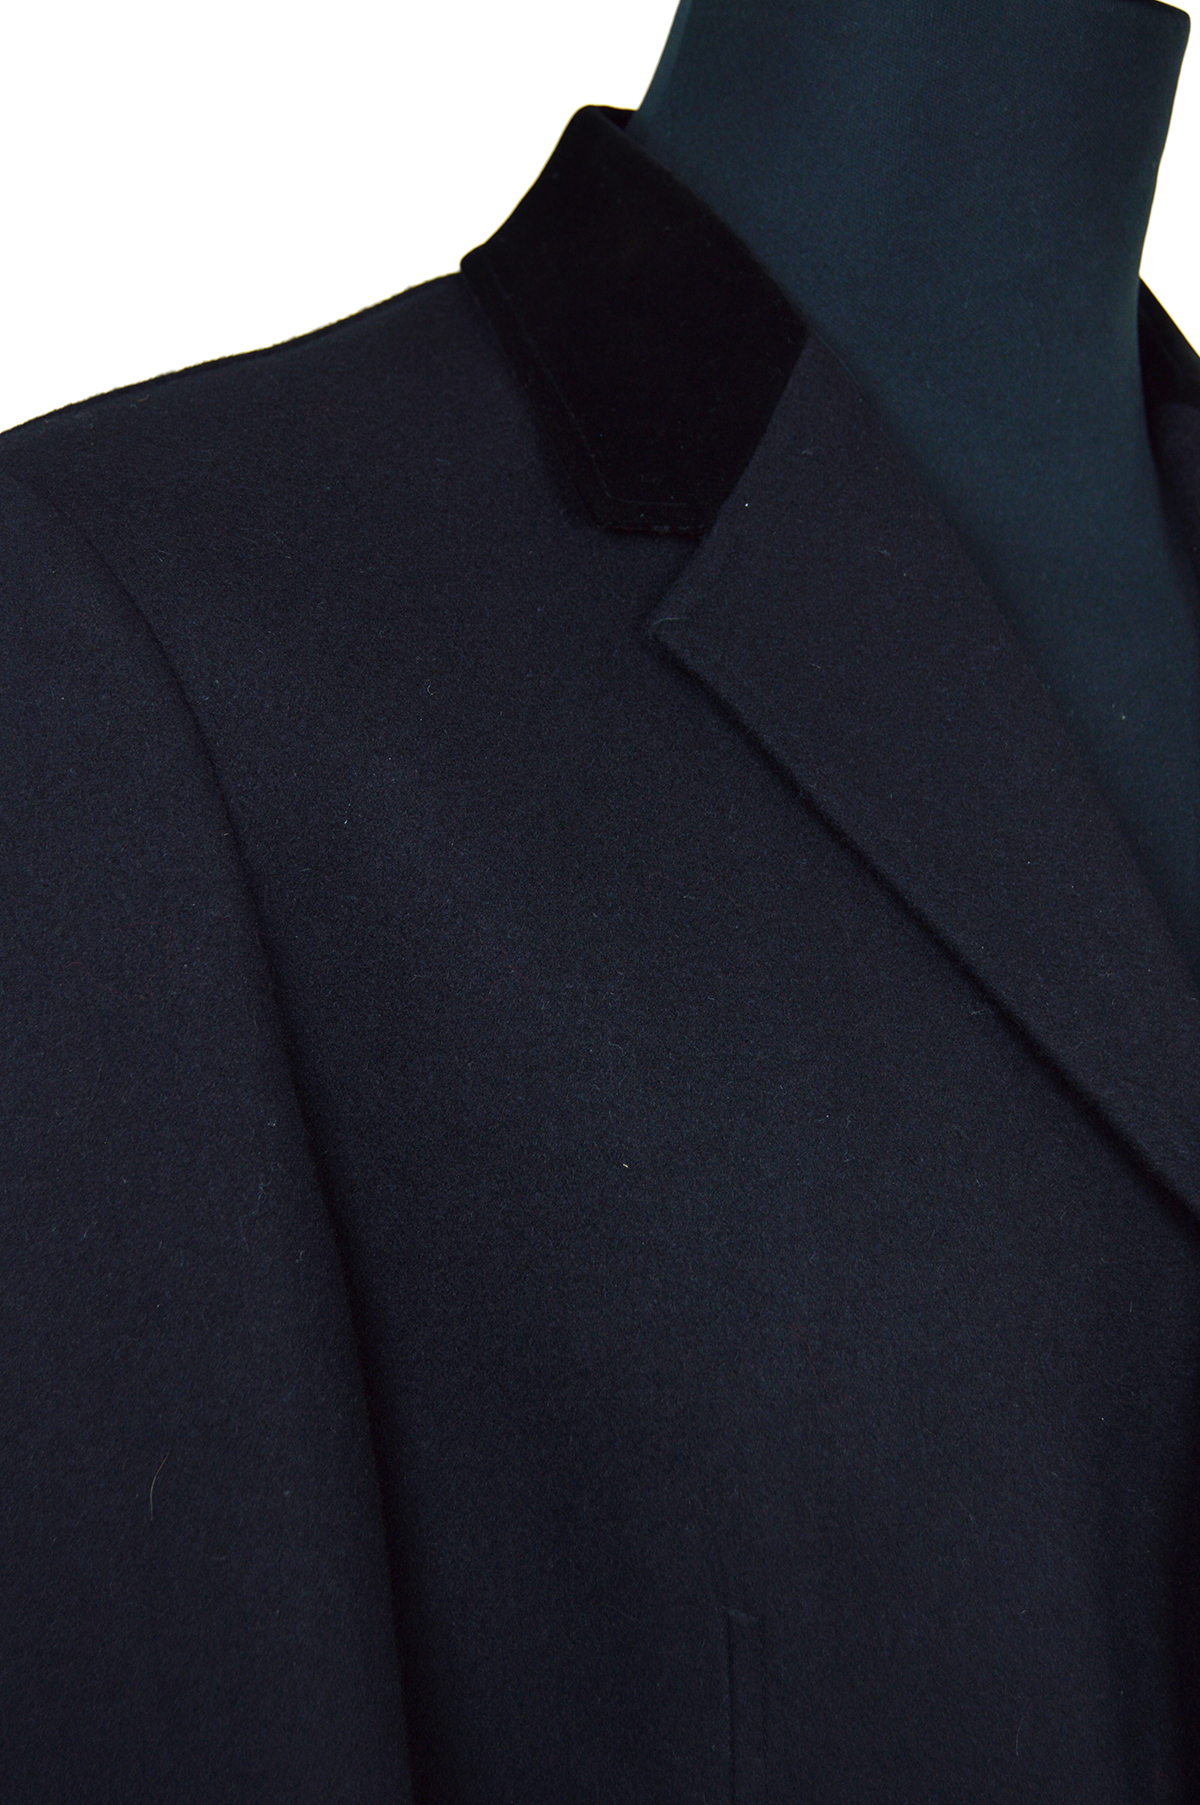 modshoes-peaky-blinders-style-coat-thomas-shelby-black-overcoat-03 ...